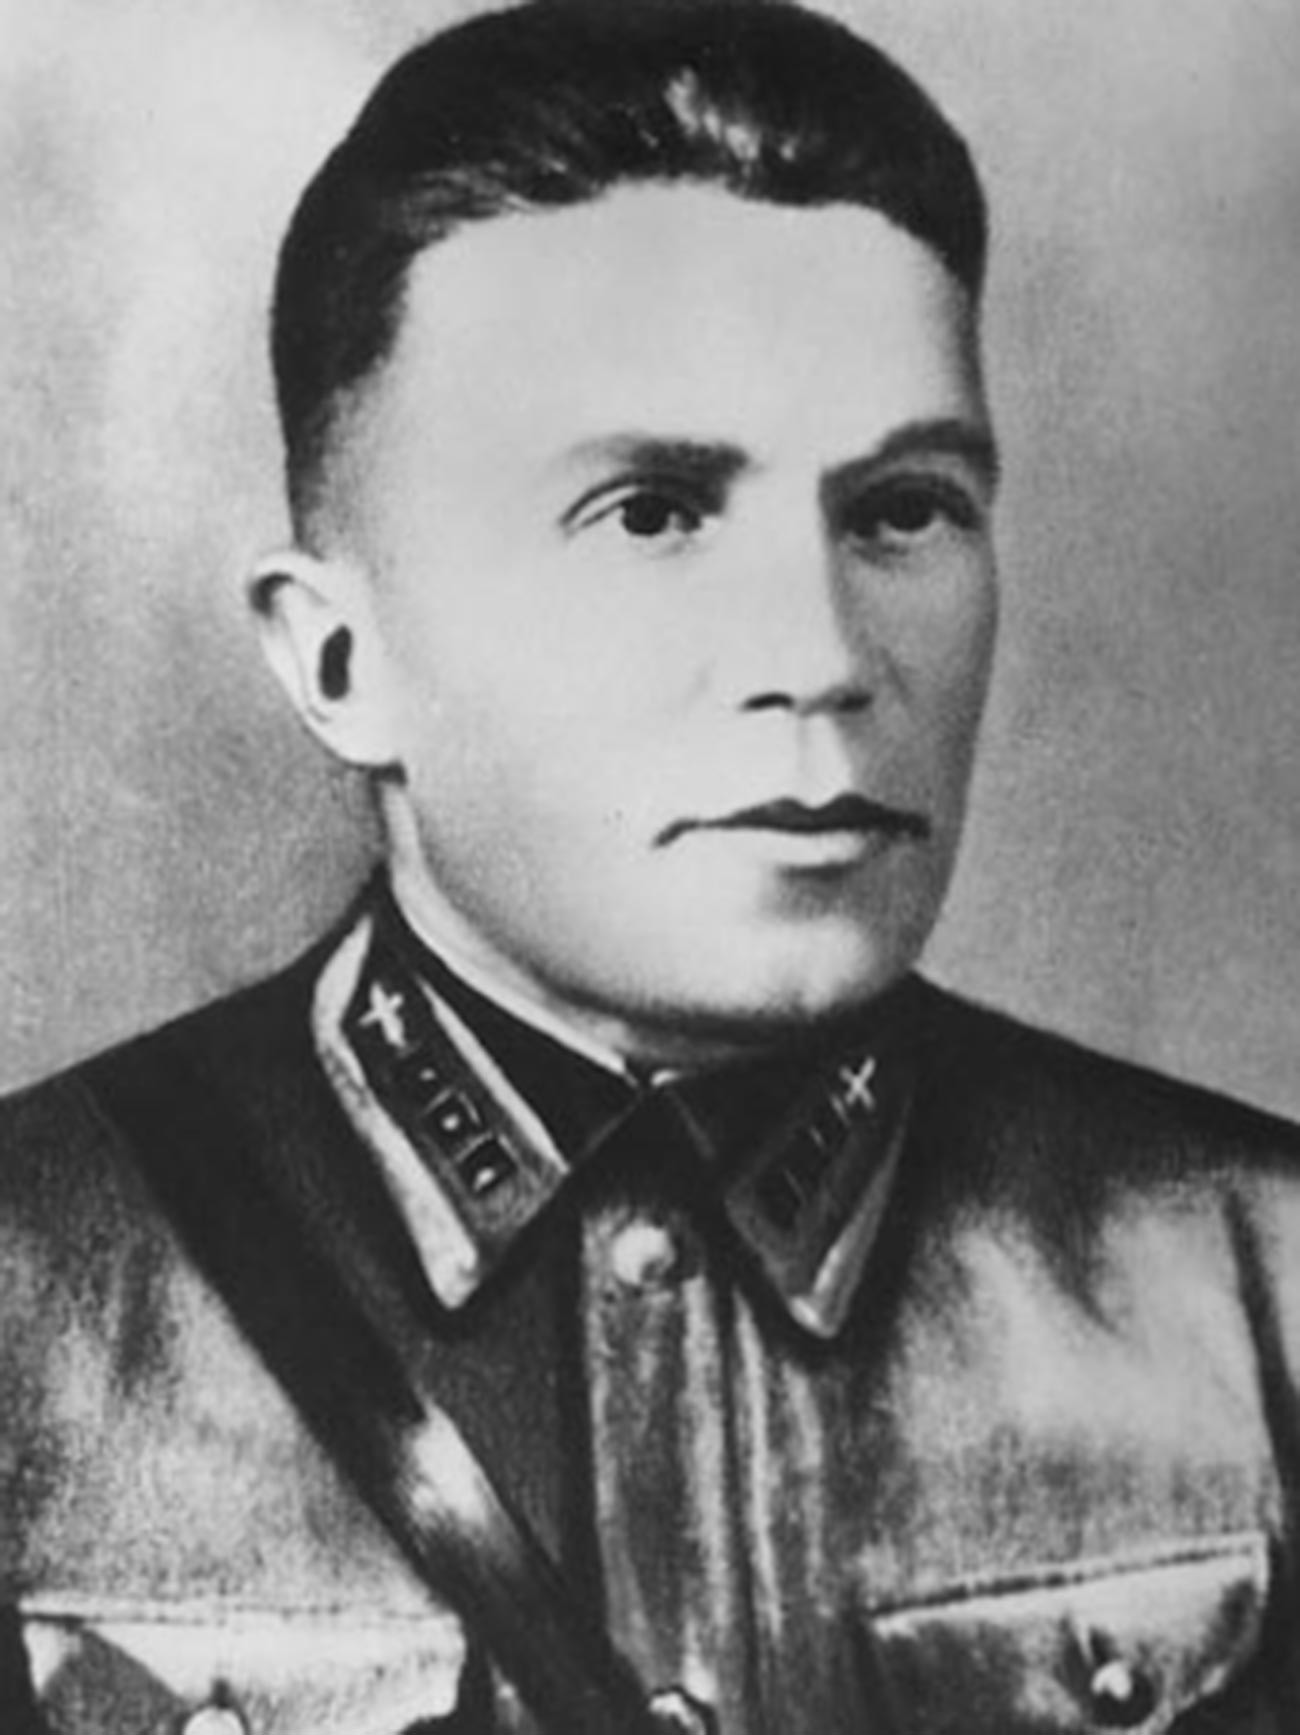 Nikolai Kuznetsov in 1940.